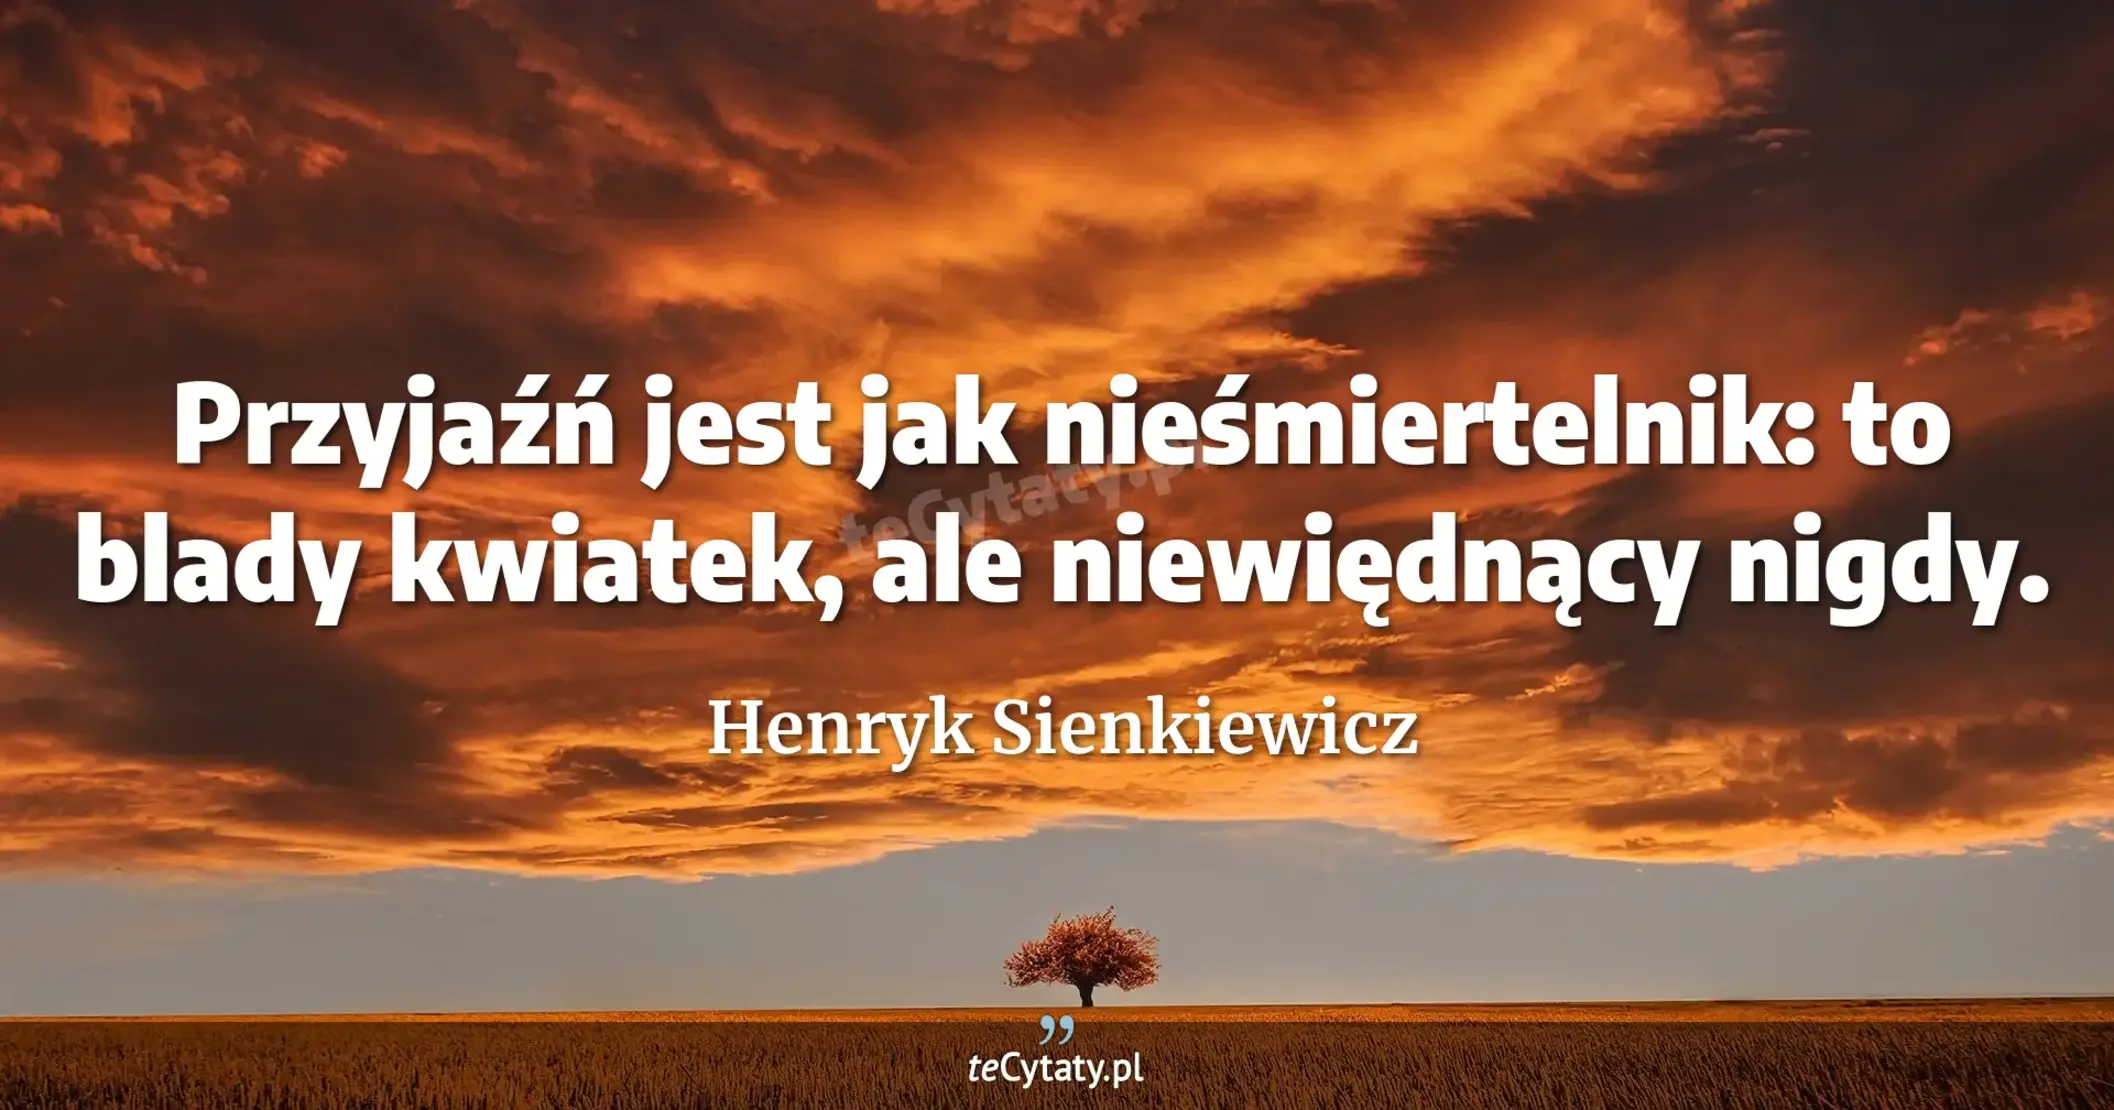 Przyjaźń jest jak nieśmiertelnik: to blady kwiatek, ale niewiędnący nigdy. - Henryk Sienkiewicz